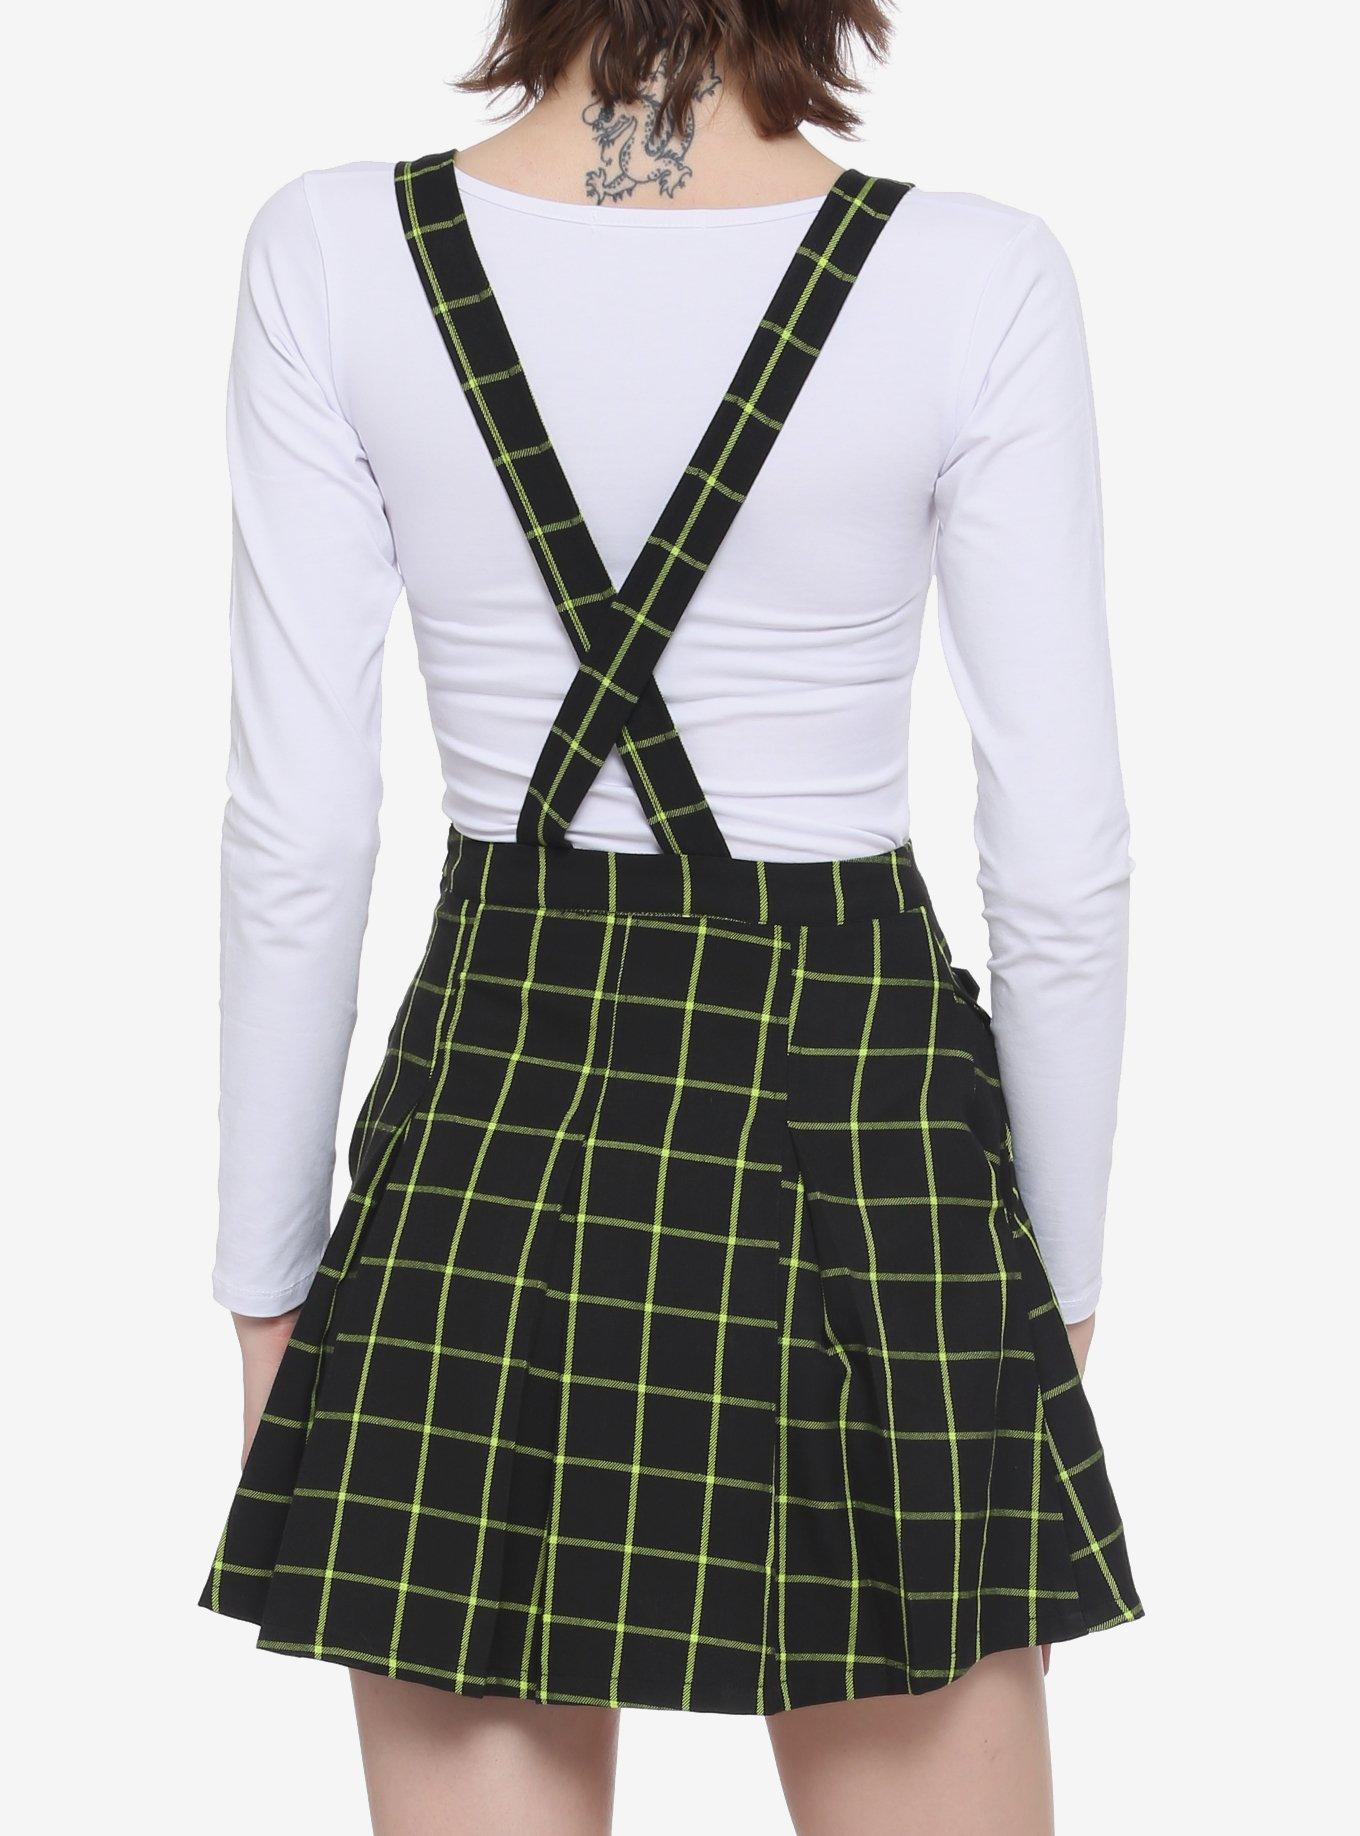 Green & Black Grid Plaid Pleated Skirtall, BLACK, alternate